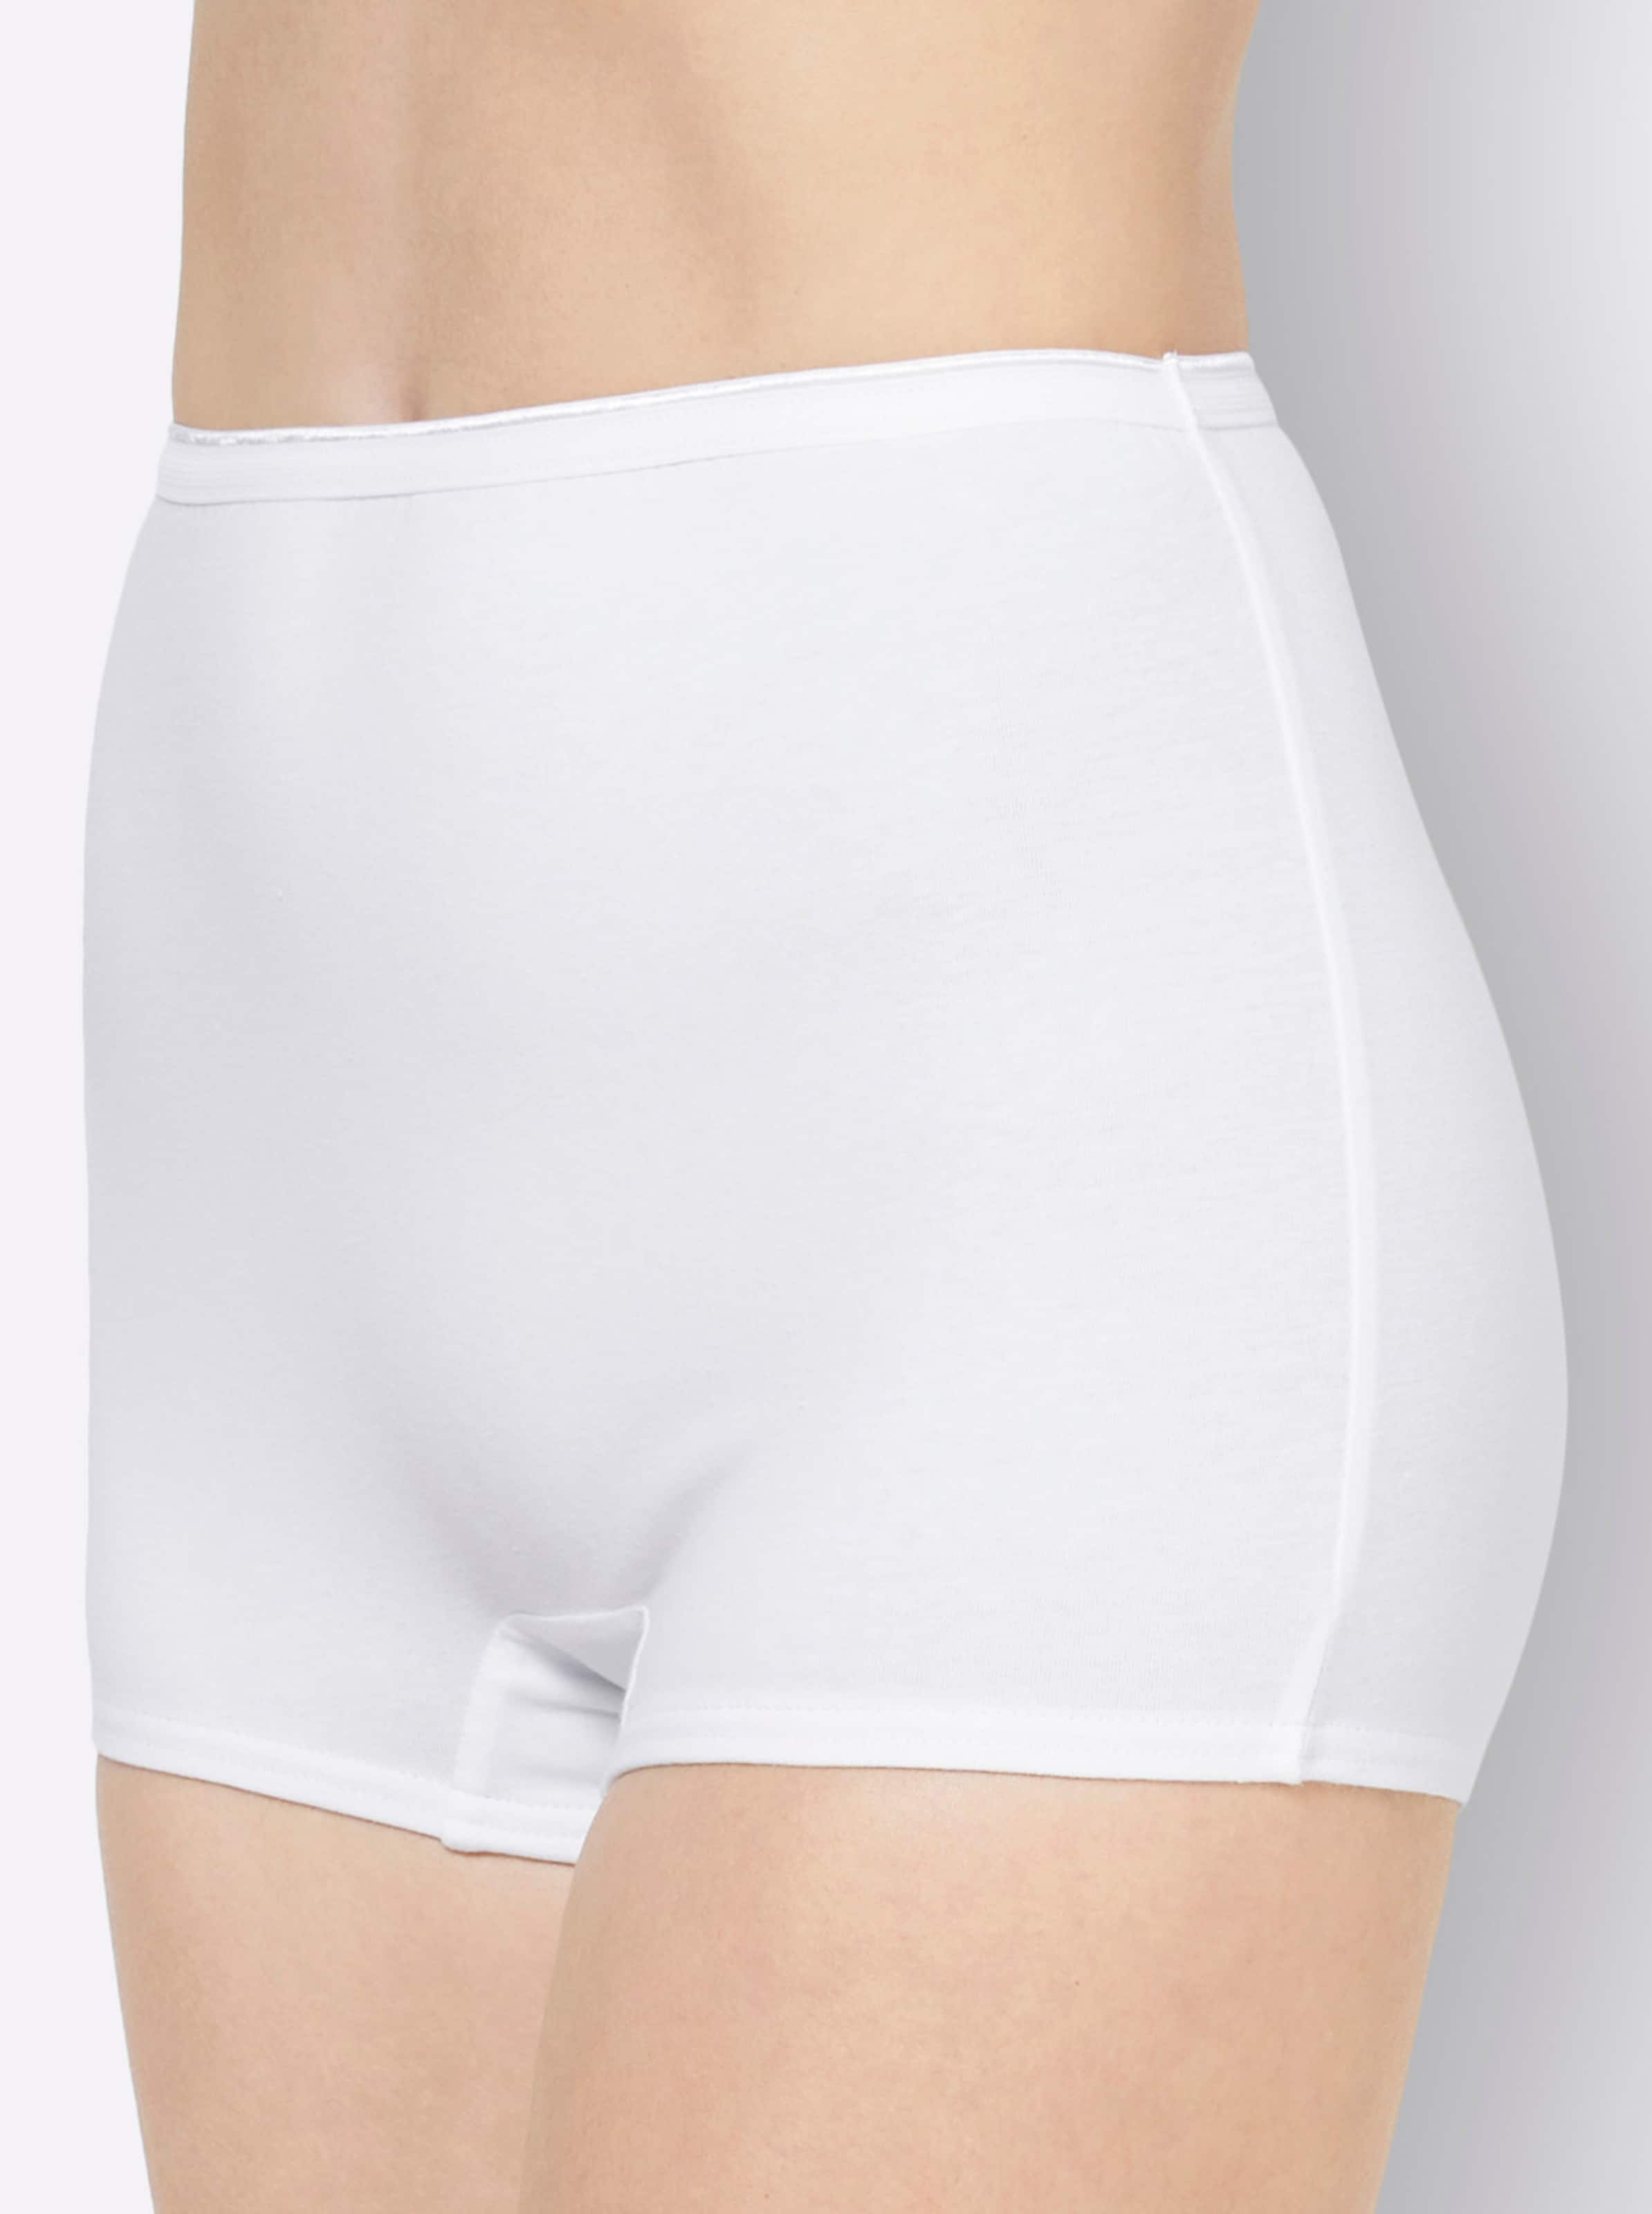 Witt Damen Panty, 2x hellgrau-geringelt + 2x weiß